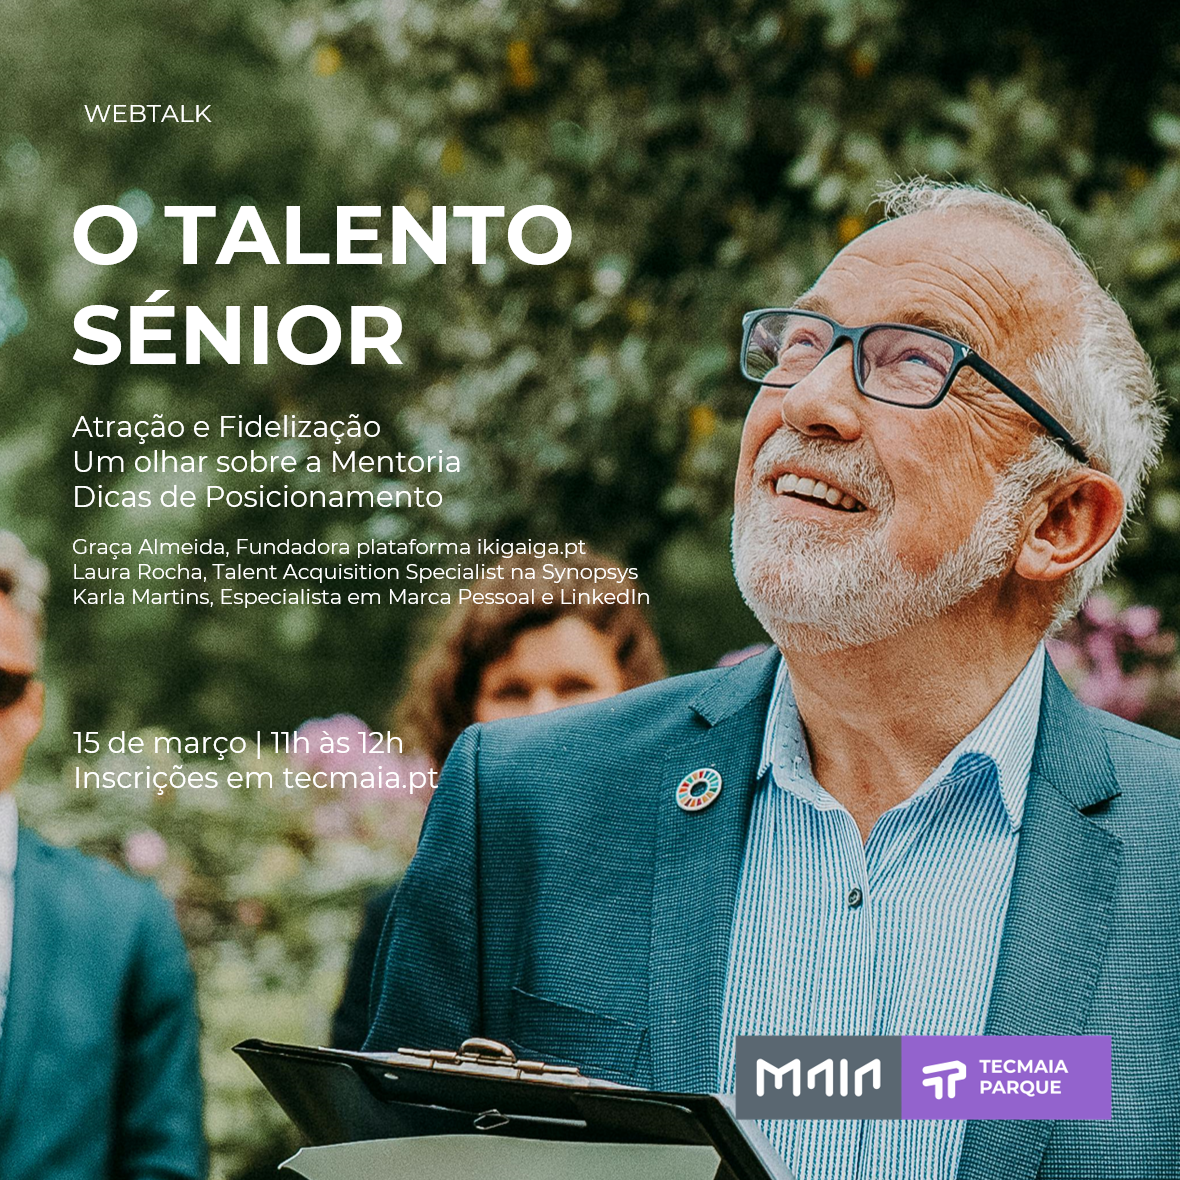 Webtalk "O Talento Sénior"